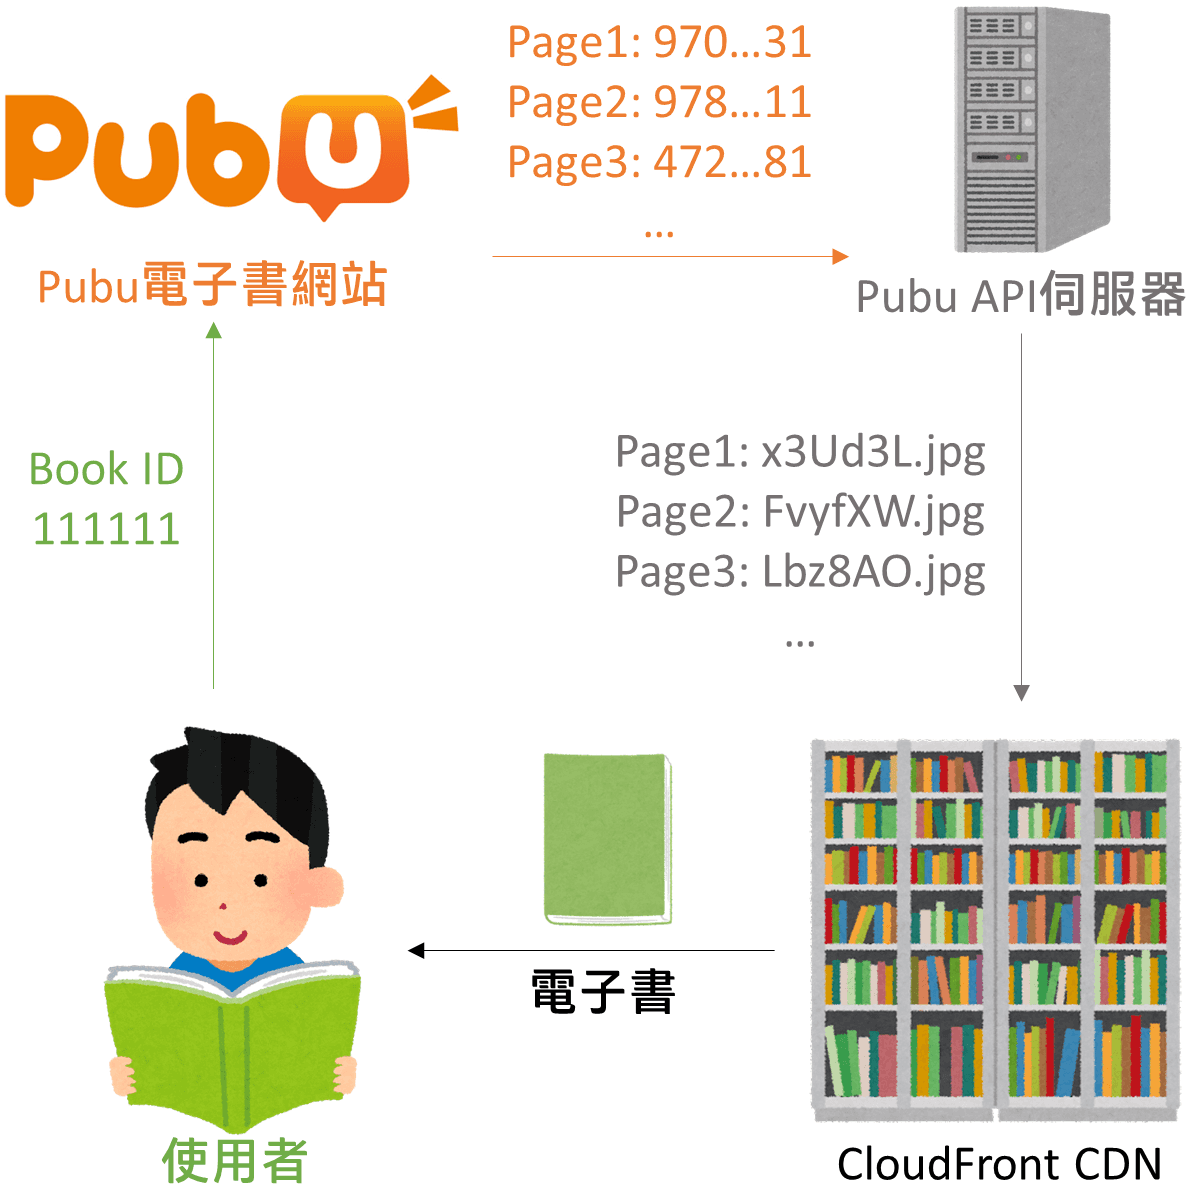 在Pubu網站上閱讀電子書的流程。